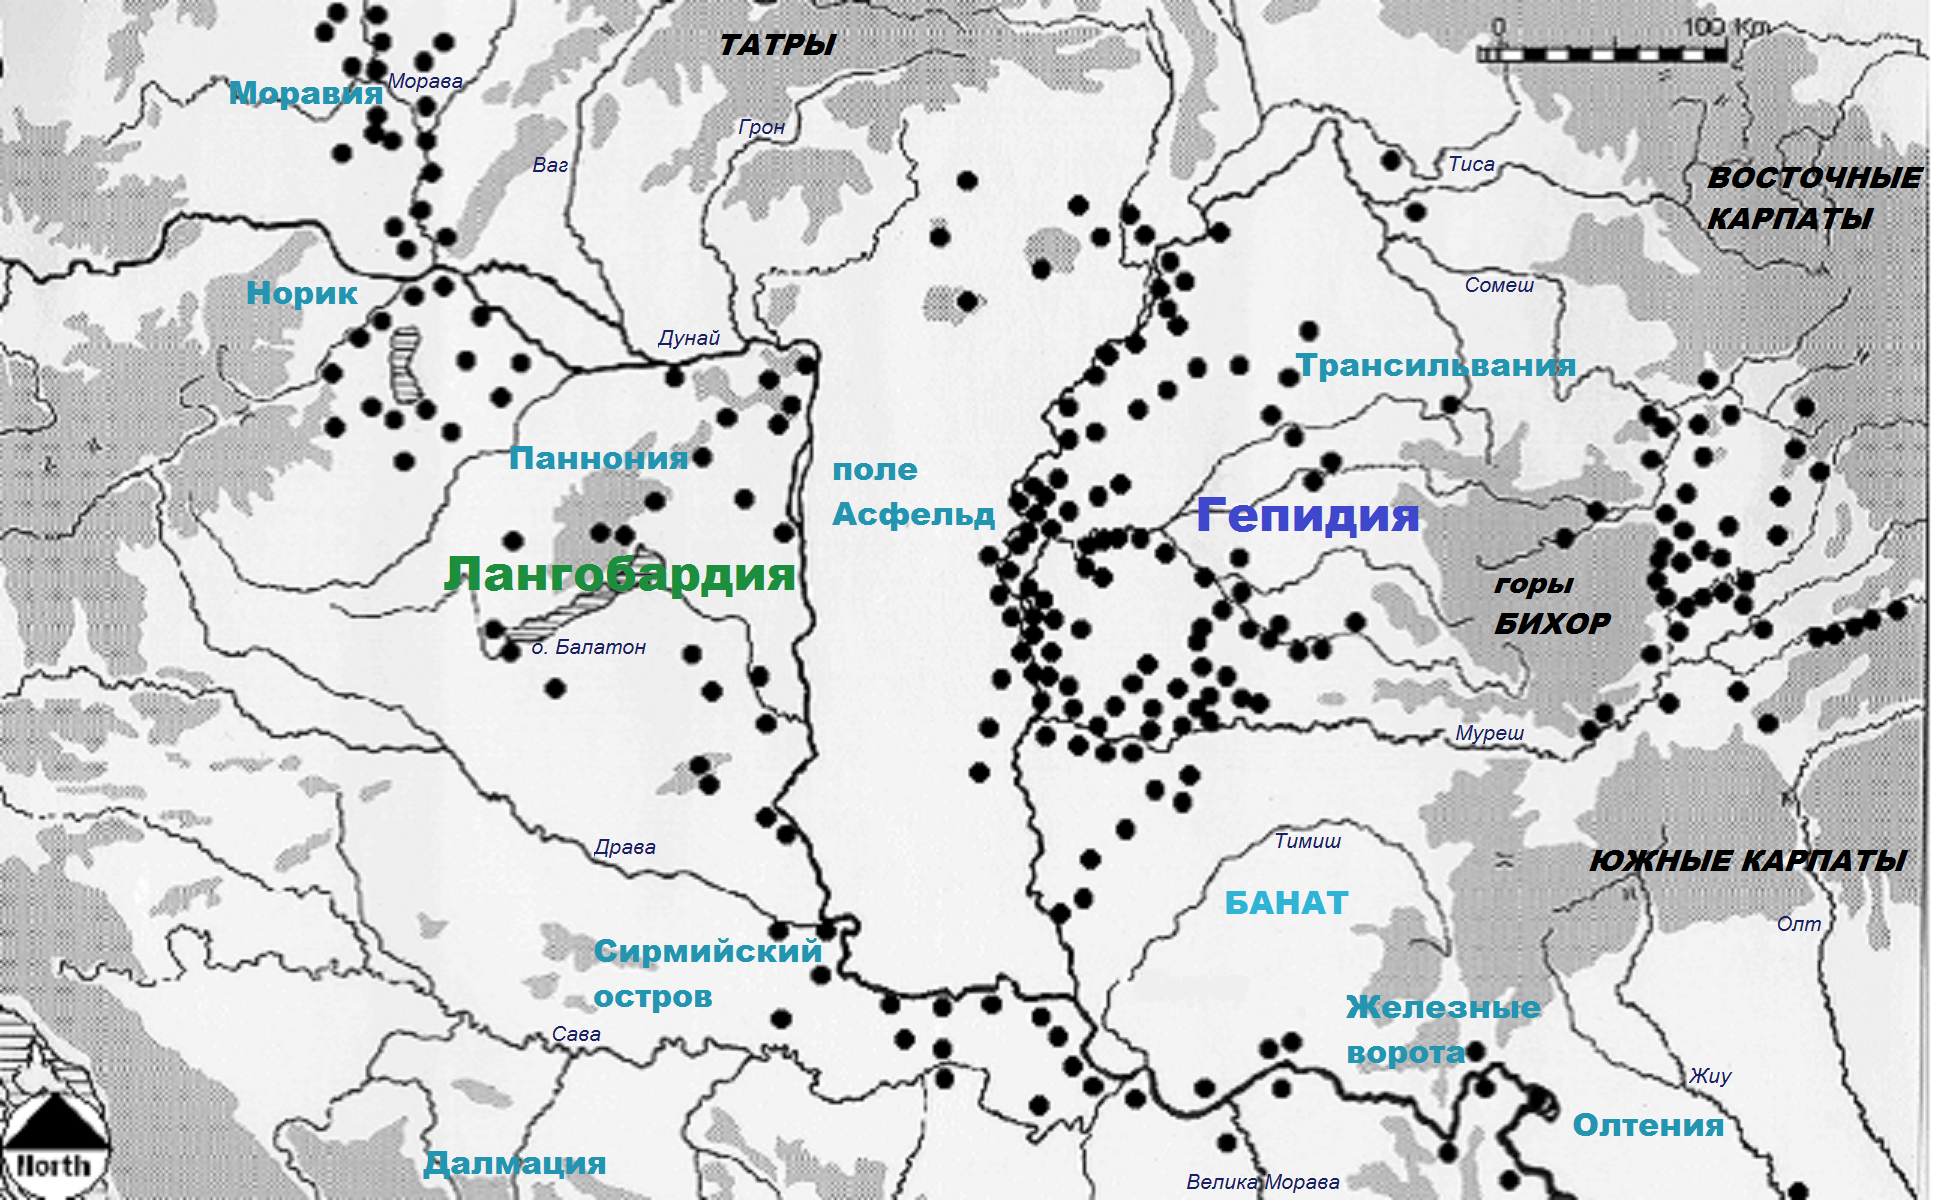 Археологическая ситуация на Среднем Дунае в 5 - первой половине 6 веков по Ф. Курте